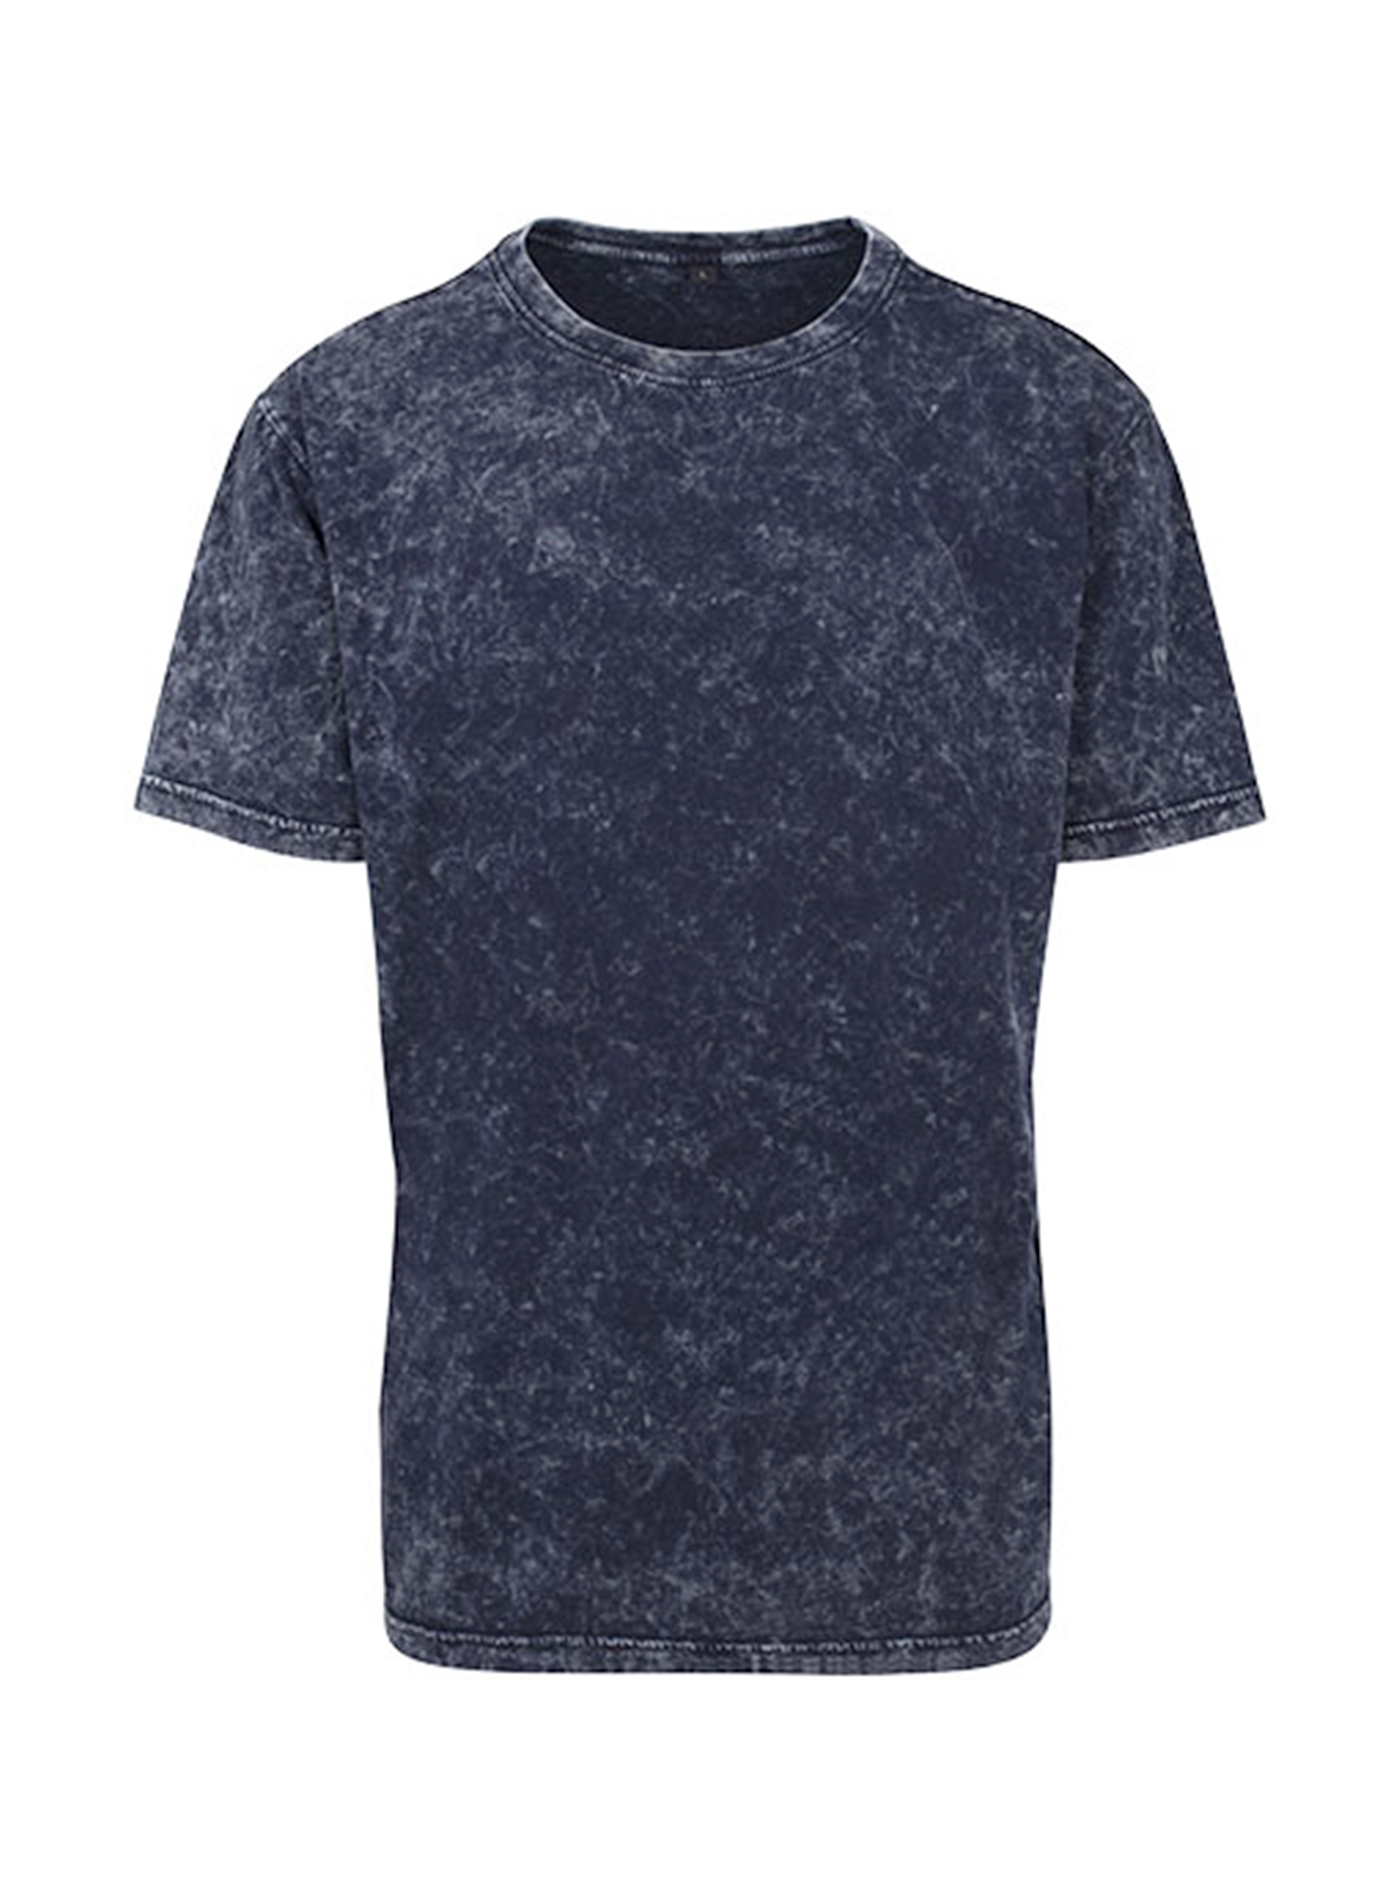 Pánské tričko Builted - Indigově modrá XL